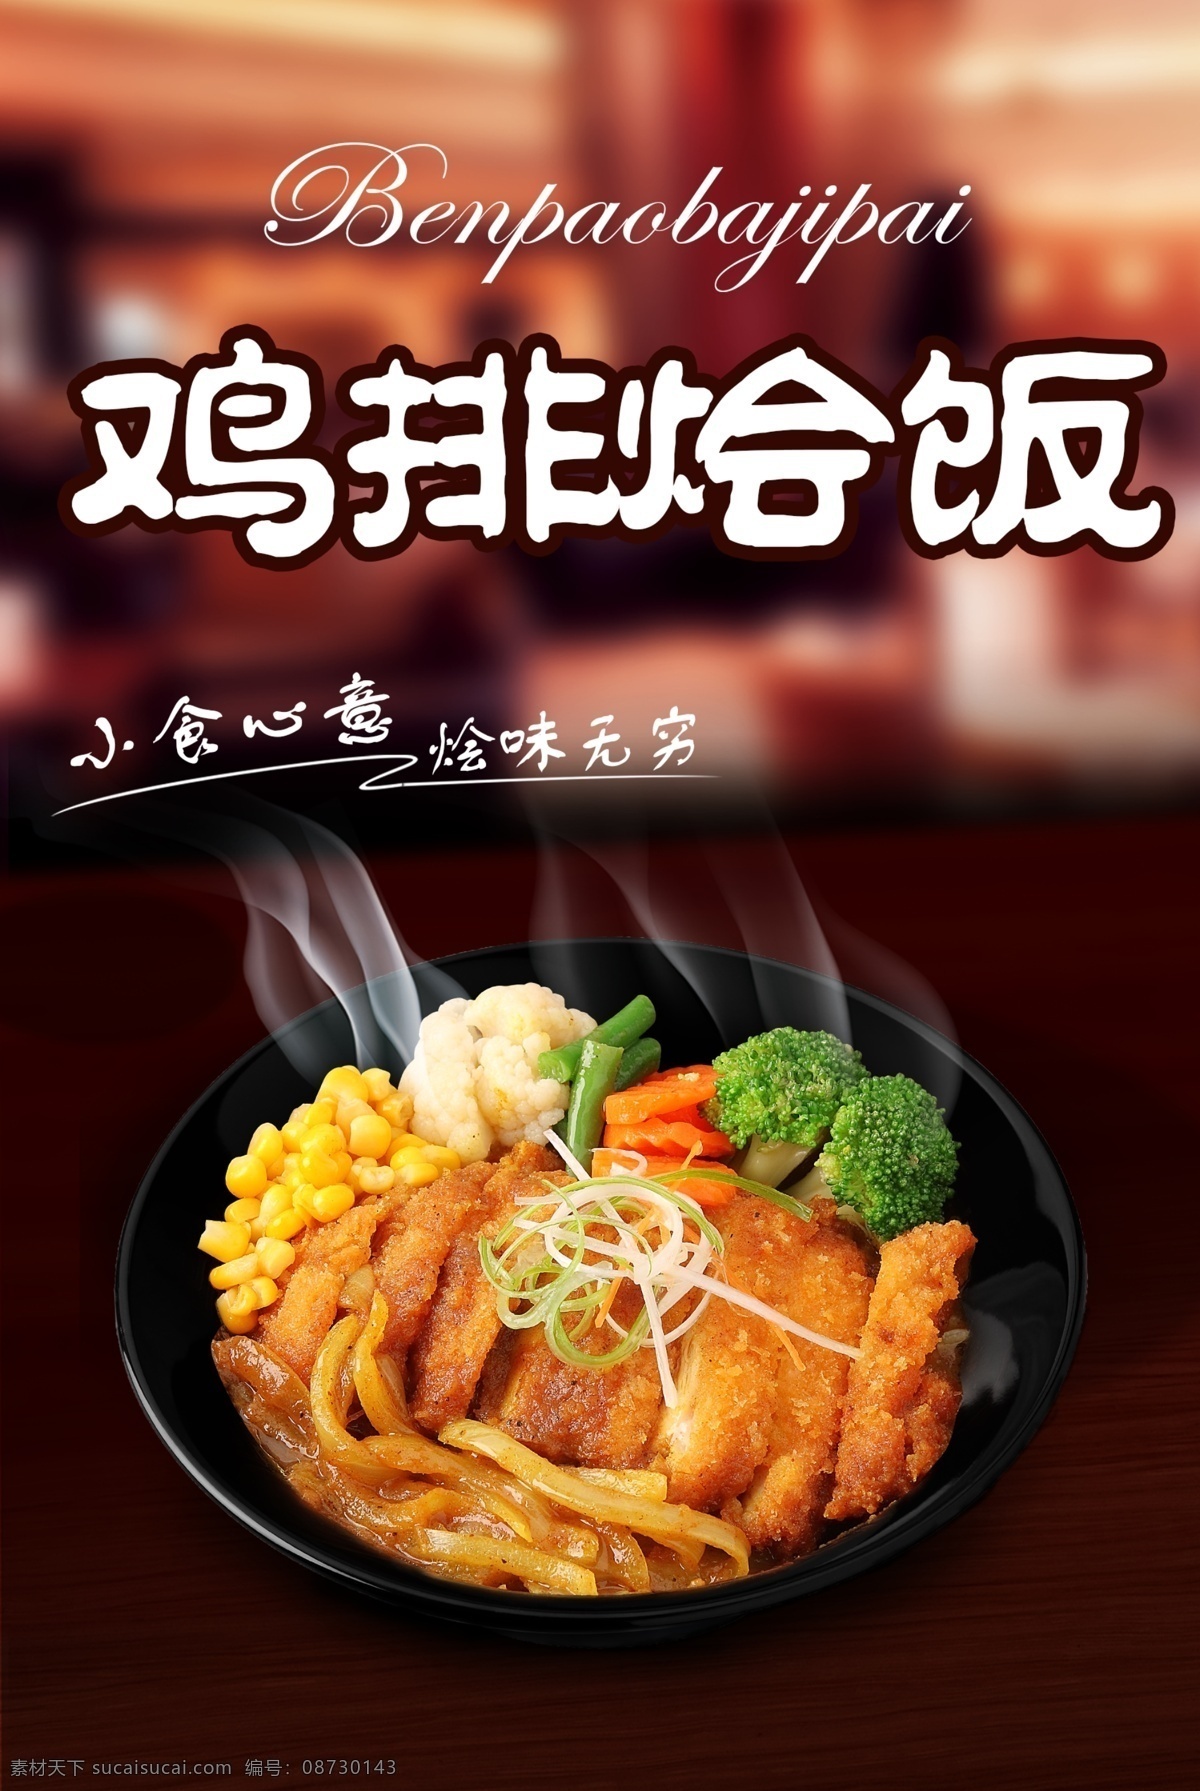 海报 鸡排烩饭 石锅饭 鸡排饭 大图海报 黑色